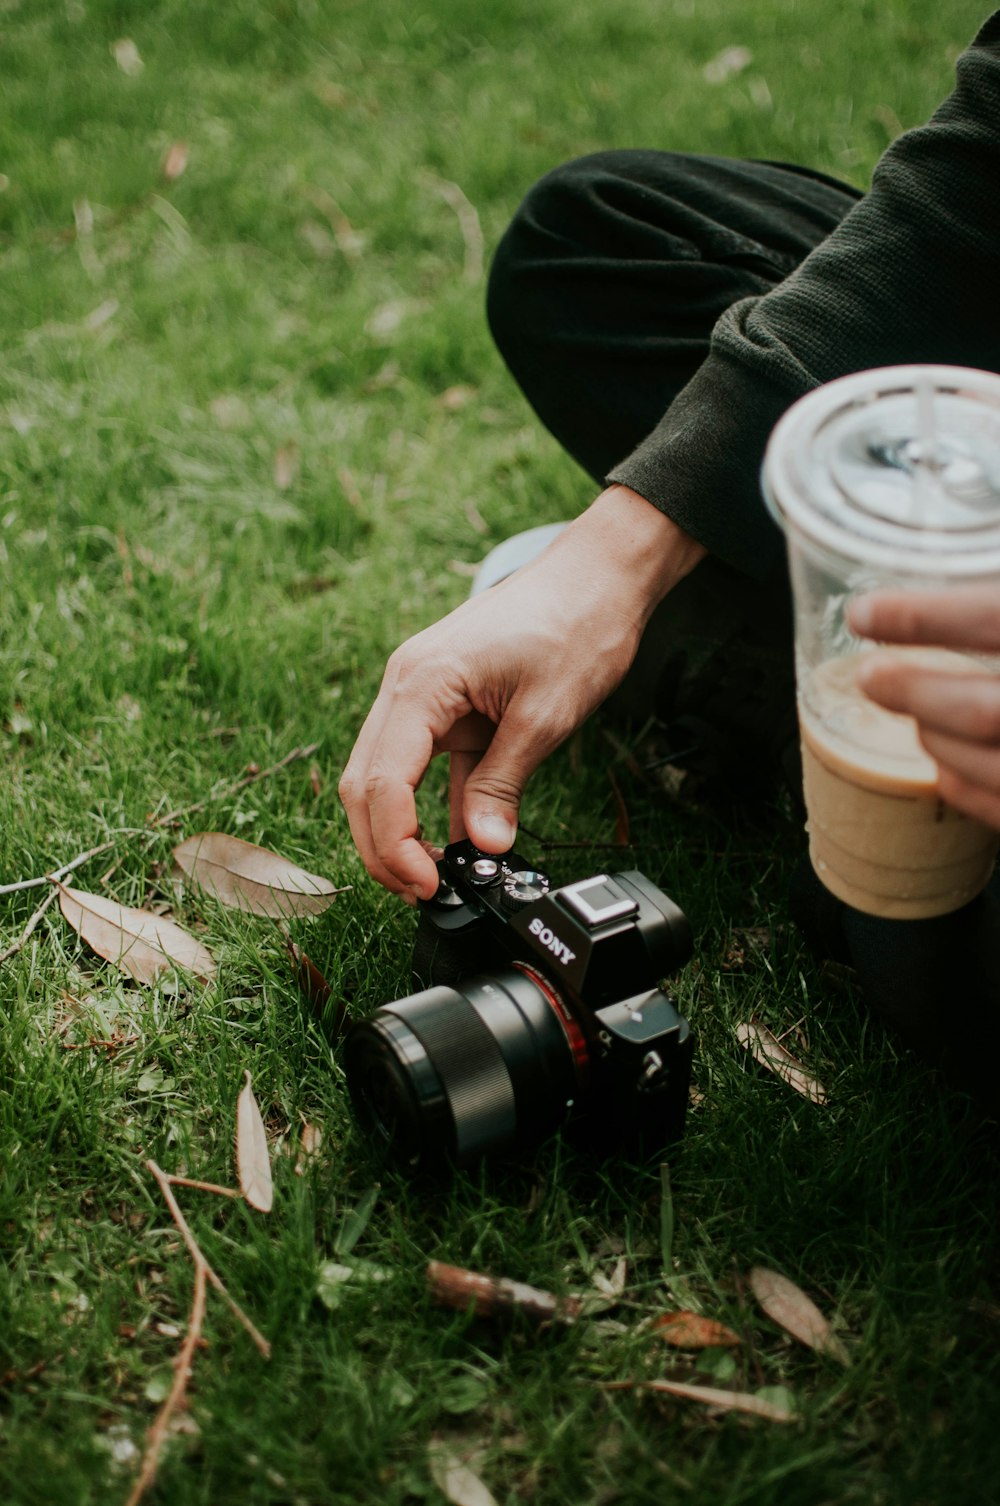 pessoa usando a câmera Sony SLR preta no campo de grama verde